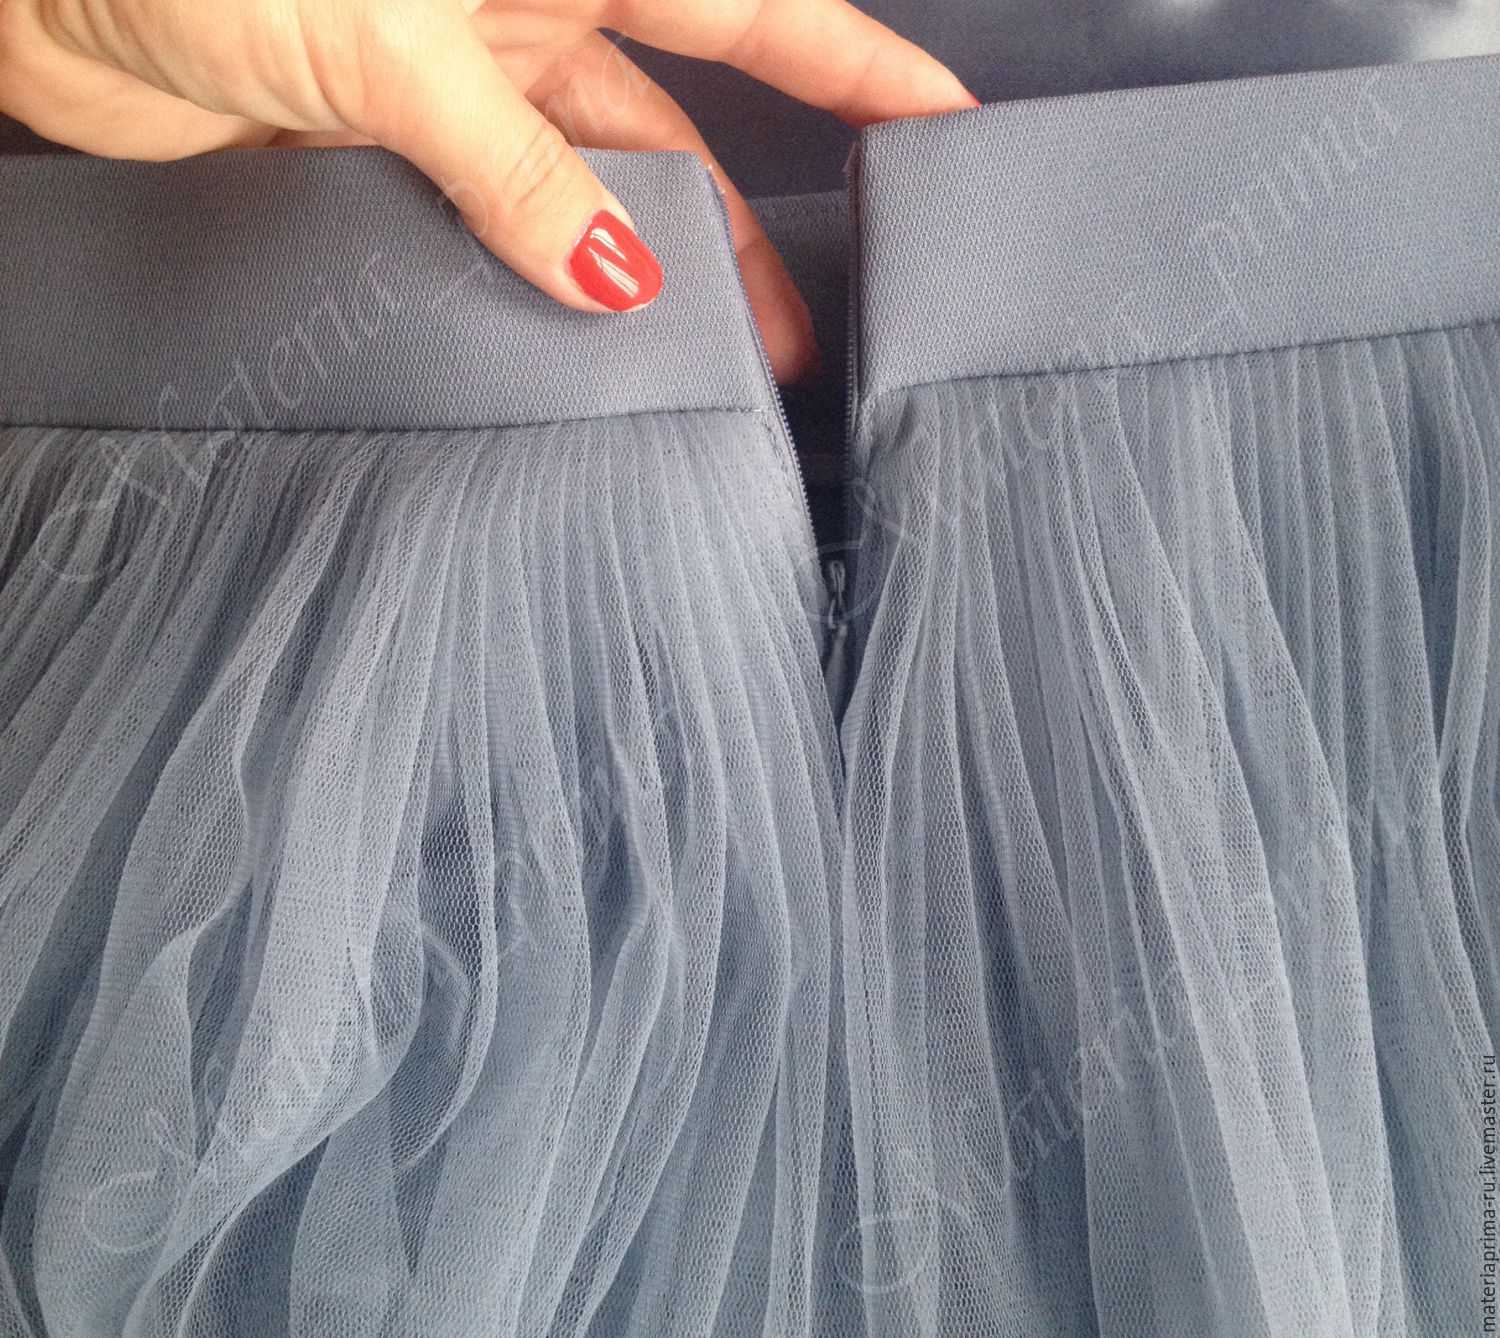 Как гладить юбку плиссе в домашних условиях. пошаговая инструкция, как утюгом погладить плиссированную юбку